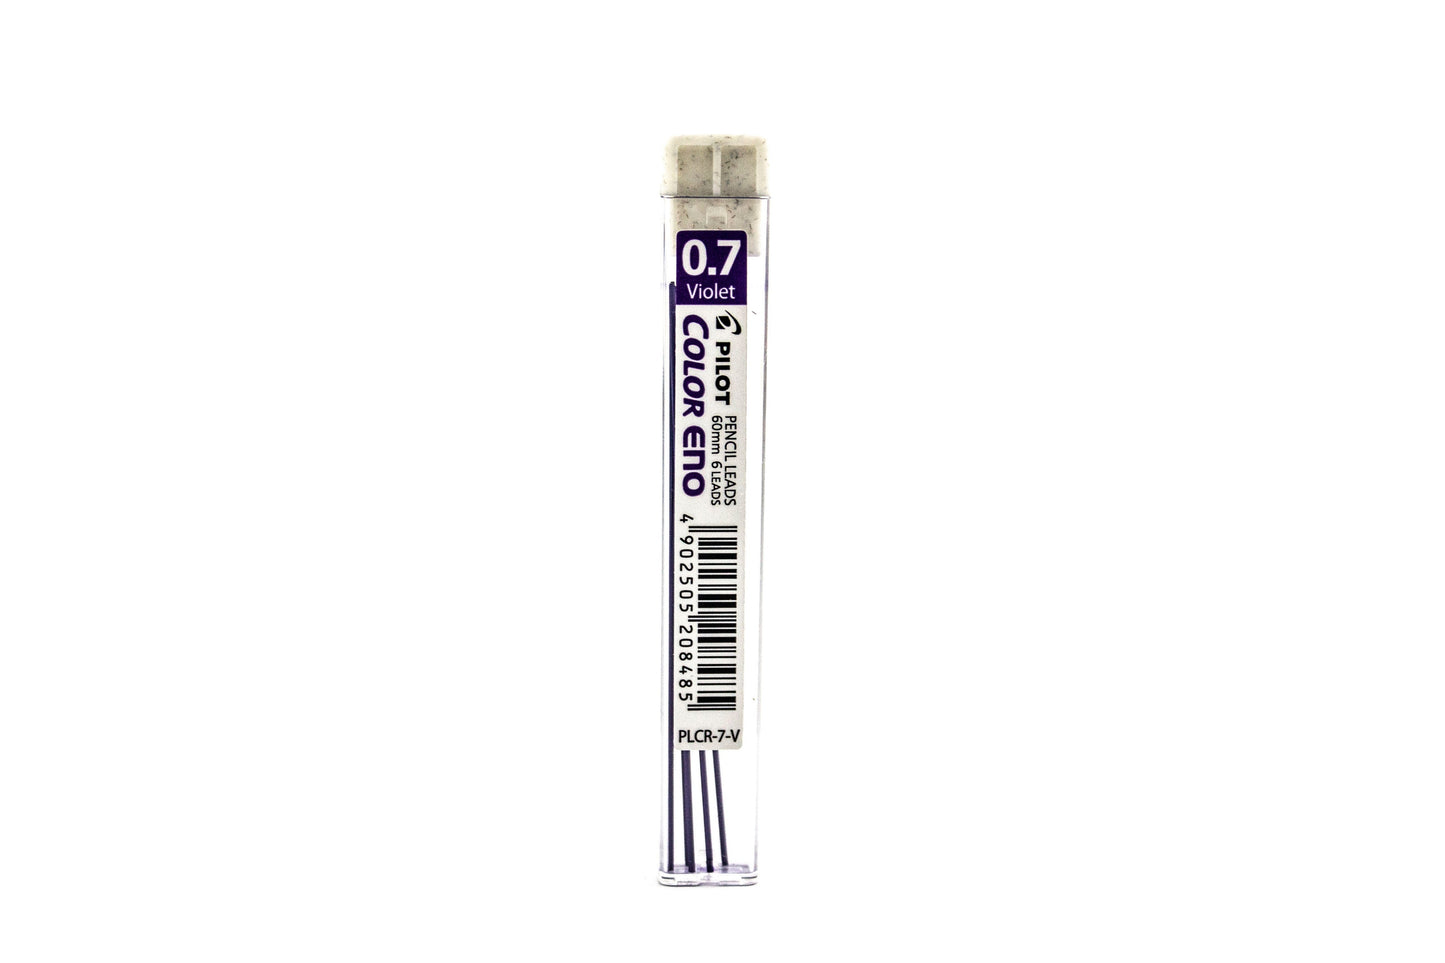 Pilot Color Eno Pencil Lead PLCR-7